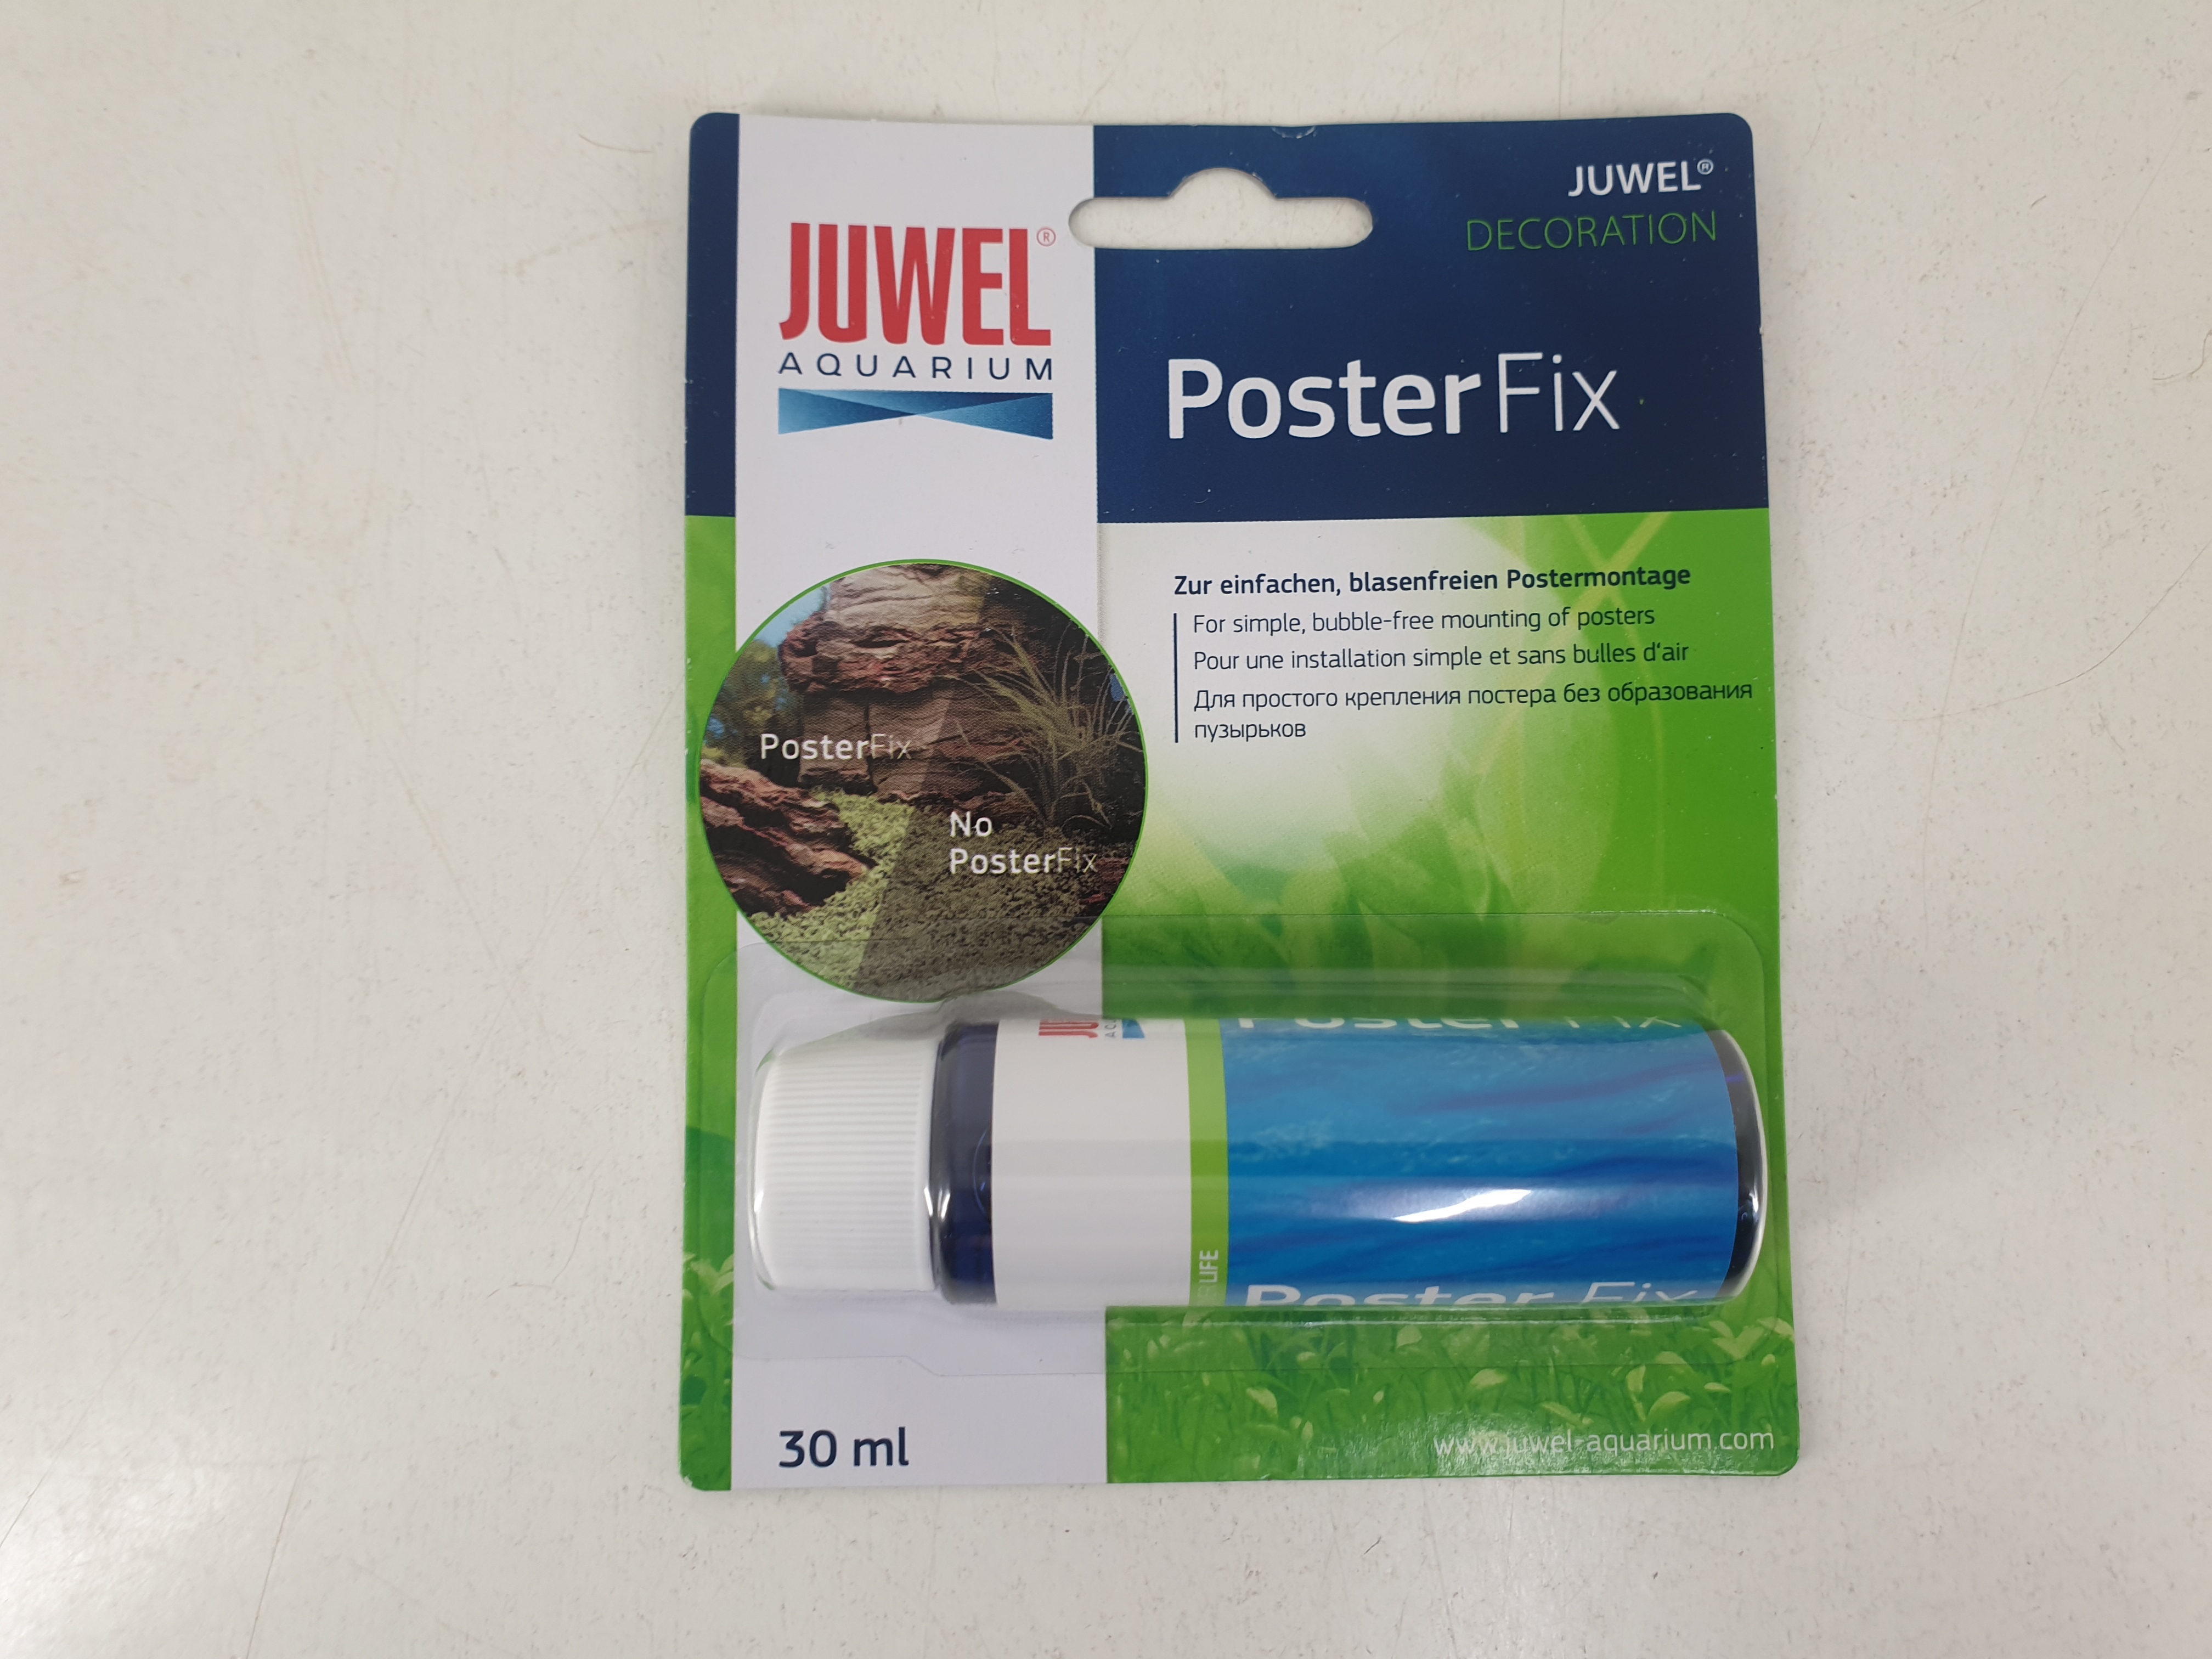 Juwel PosterFix - zur einfachen, blasenfreien Postermontage